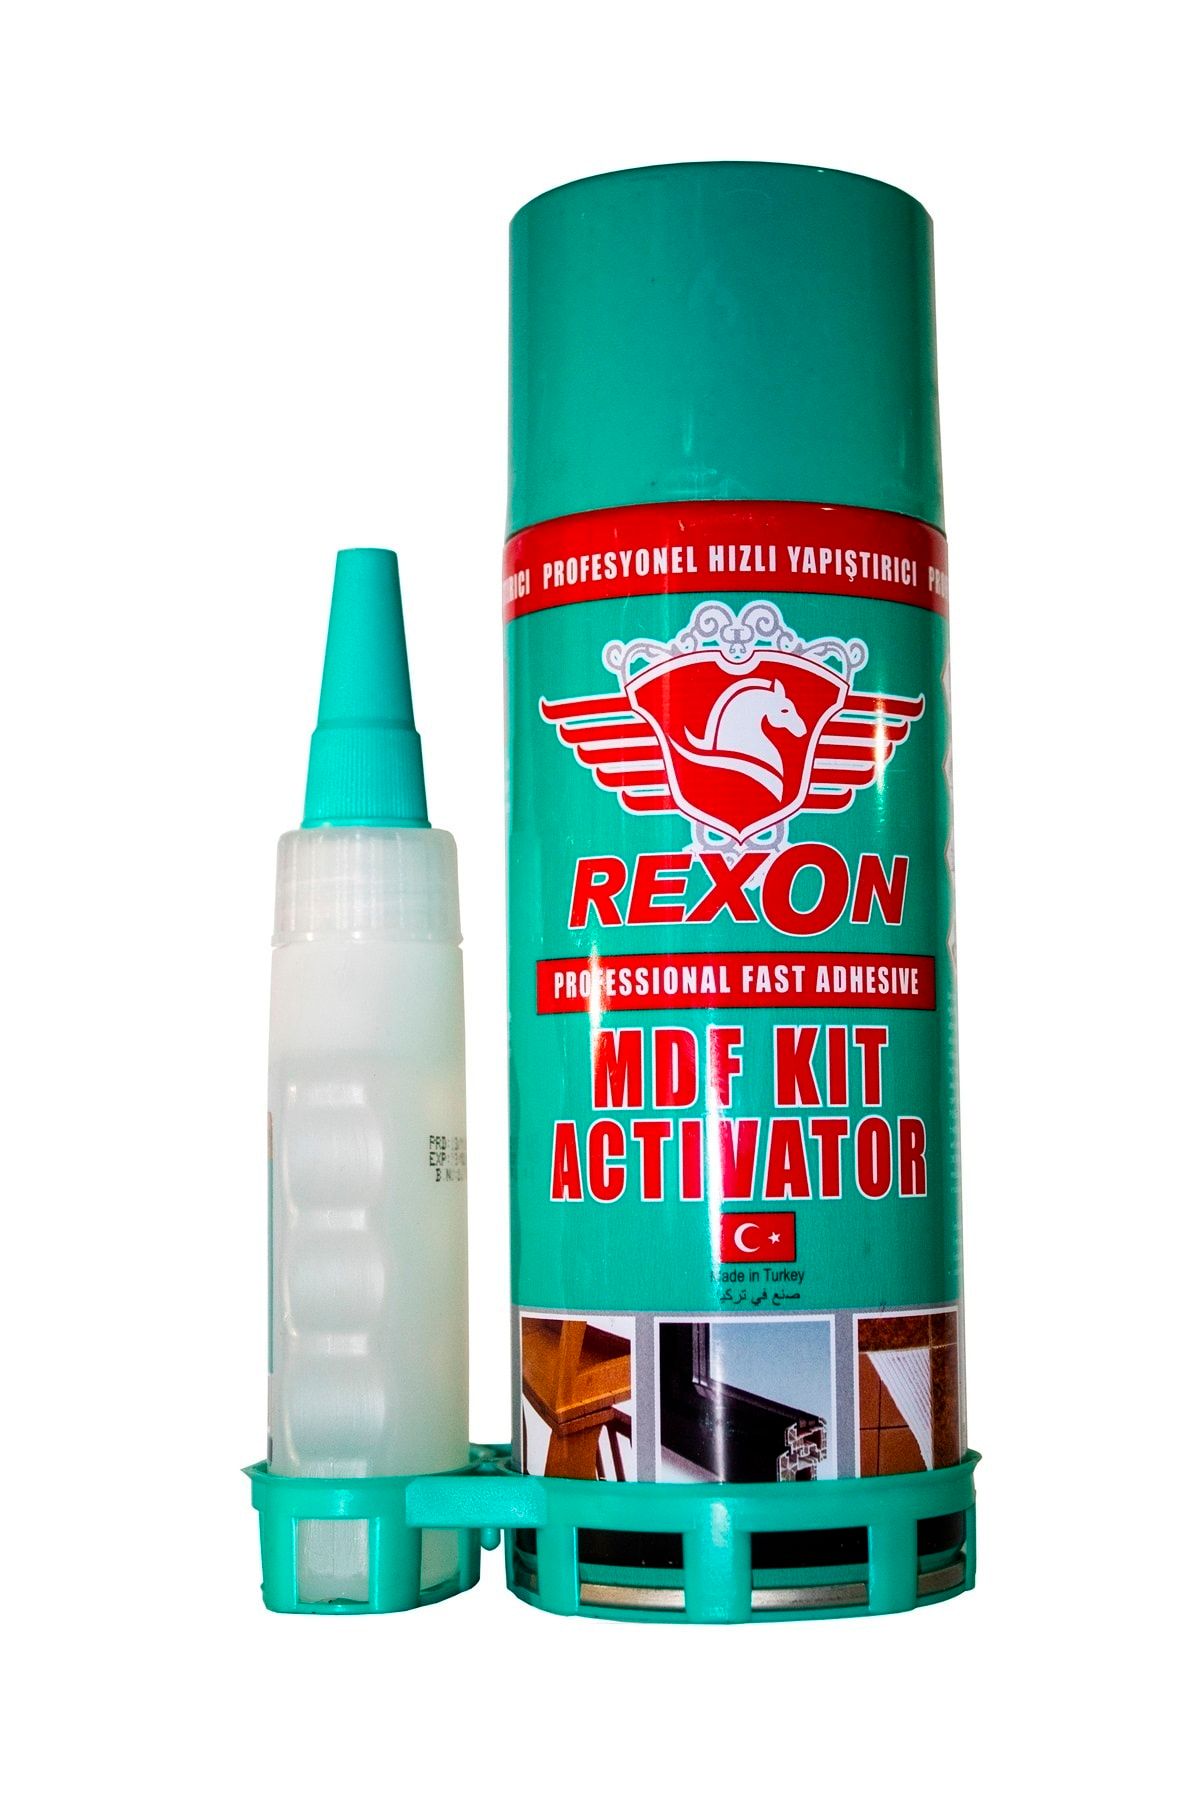 Falcon Büyük Boy Hızlı Yapıştırıcı Rexon Mdf Kit Aktivatör Teknik Sprey 400ml Dt Shop Mağazası